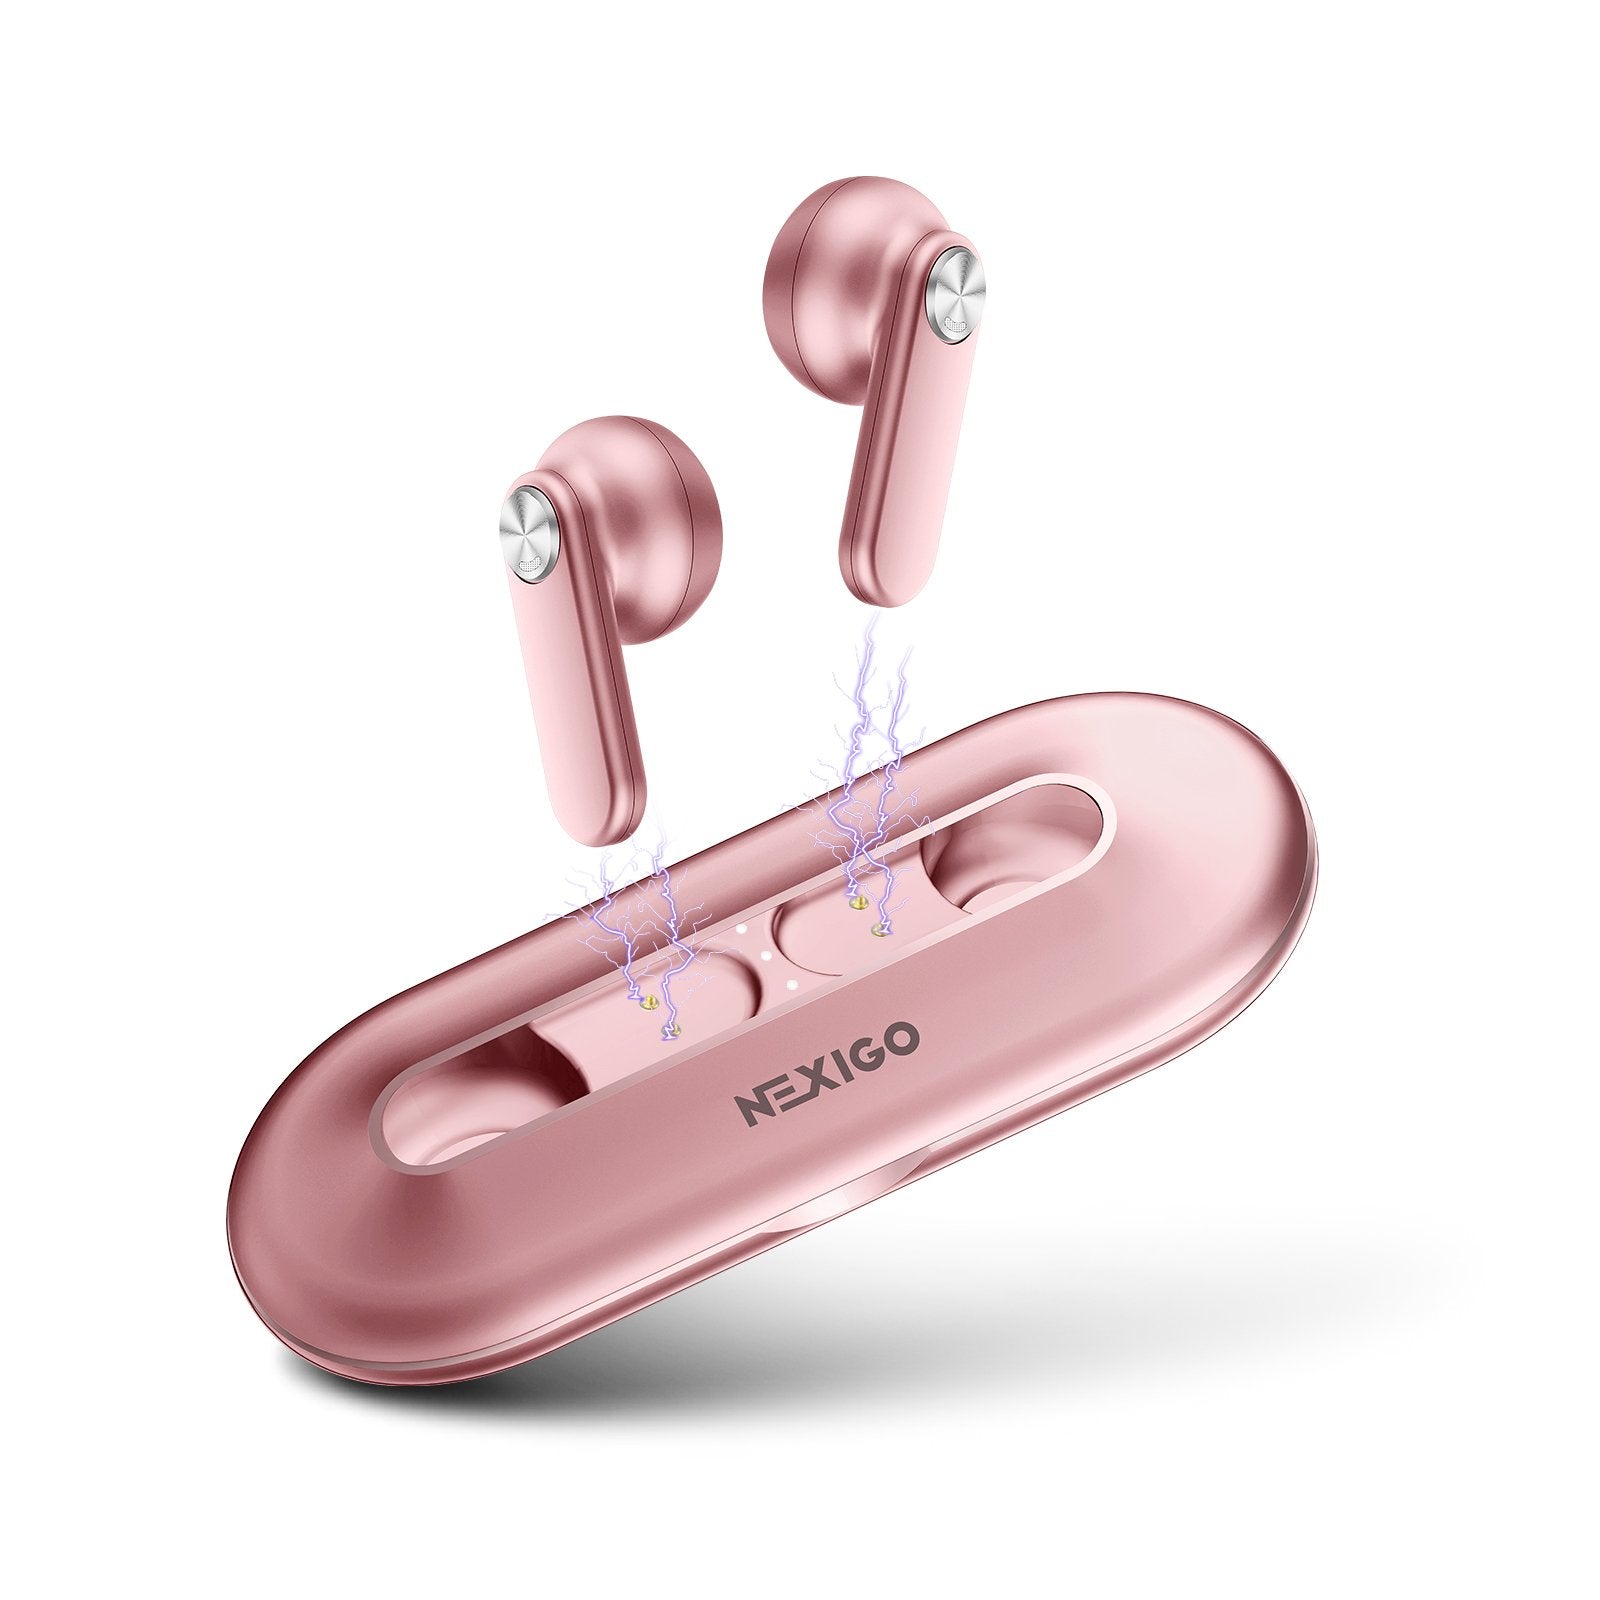 NexiGo T2 Wireless Earphones (Pink) 